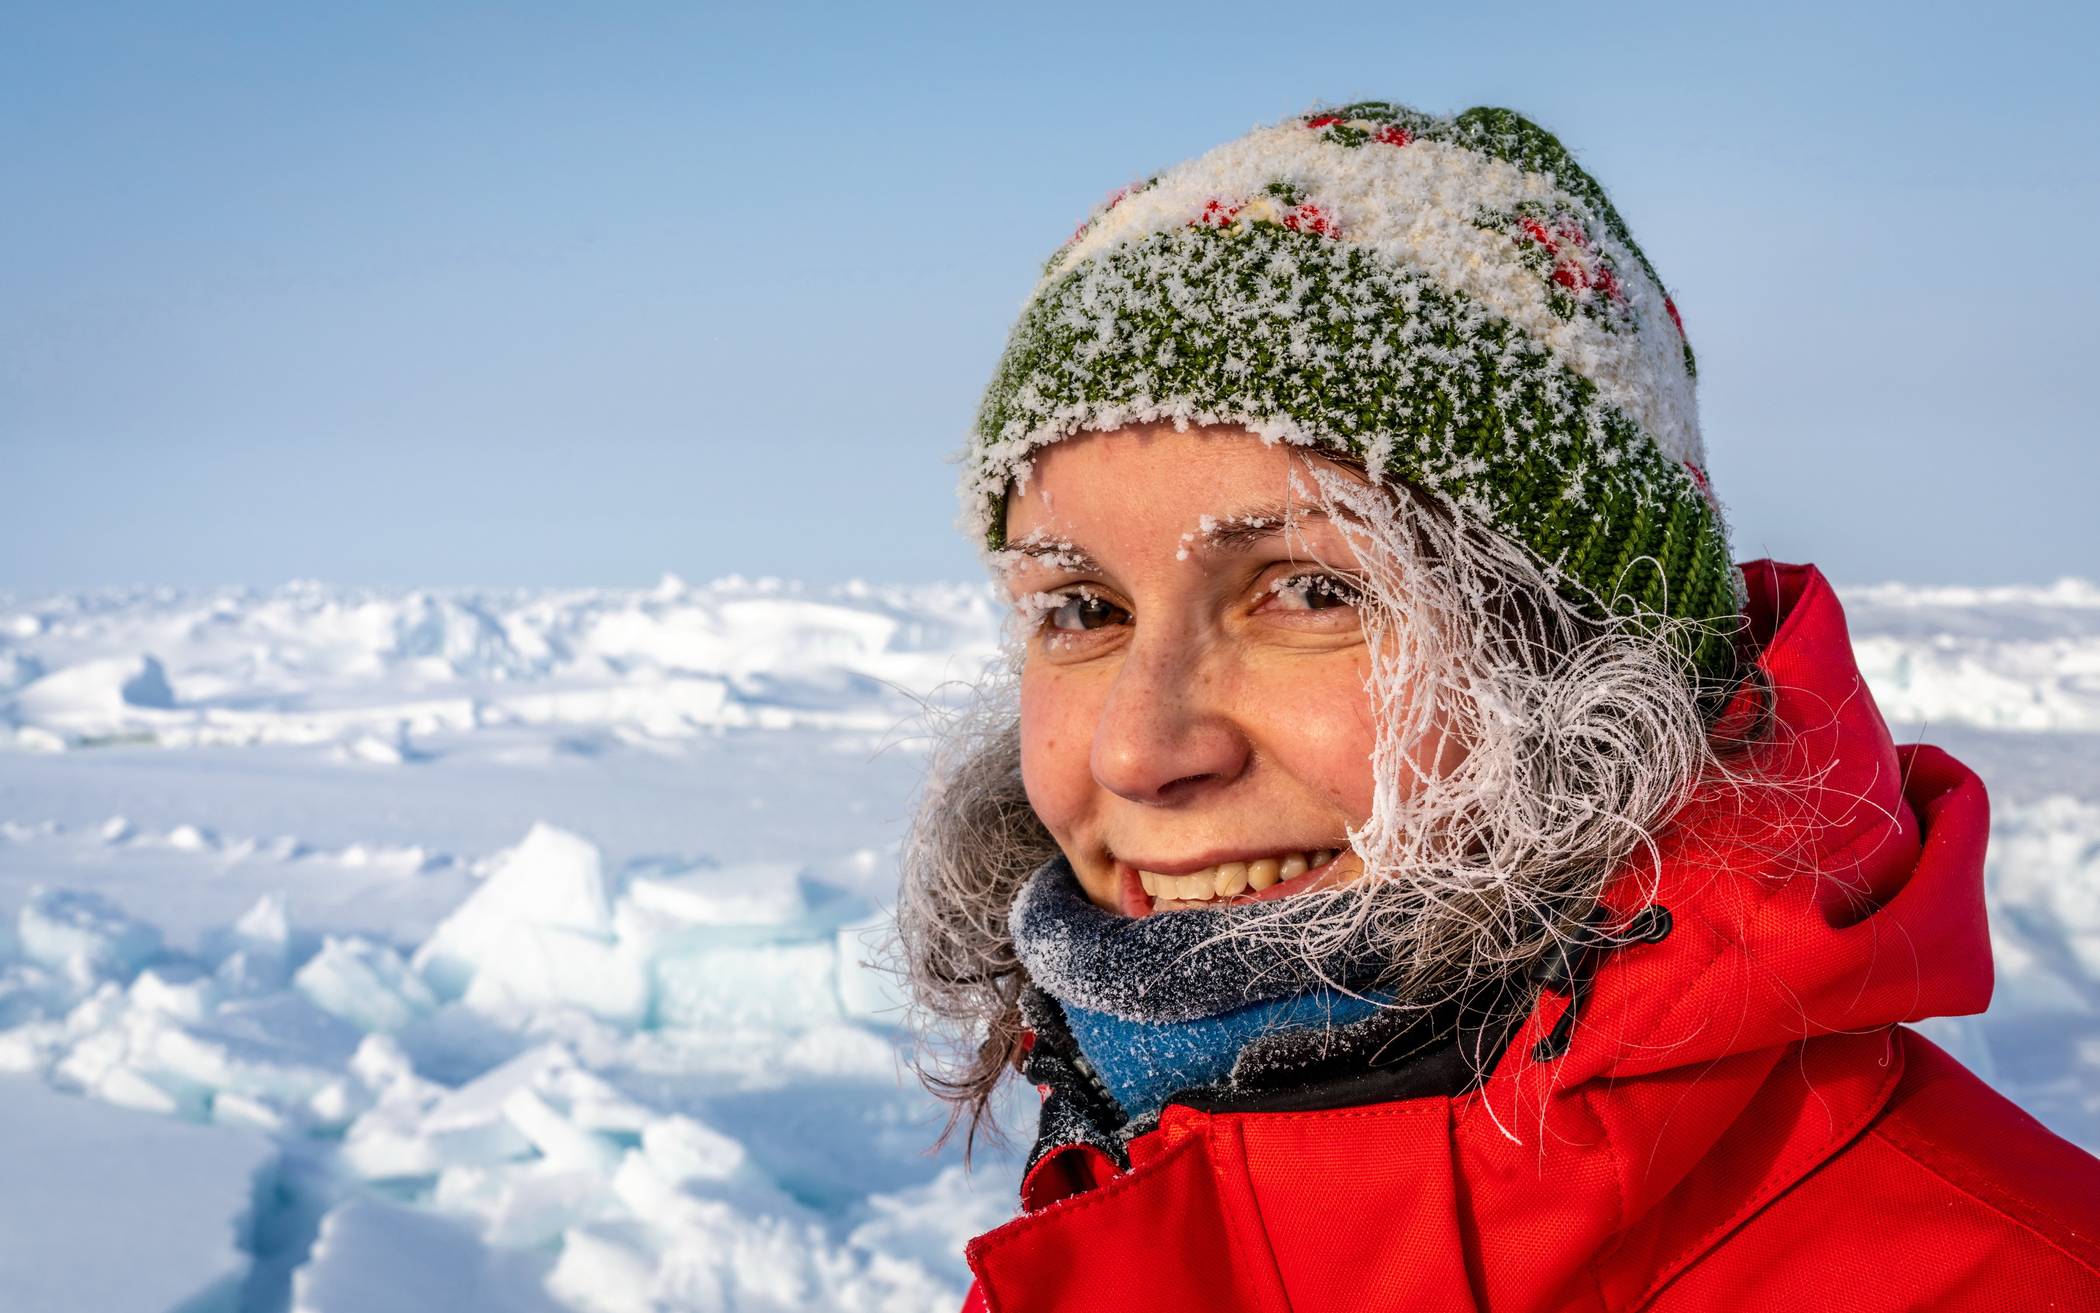  Dr. Janin Schaffer beantwortet im Junior Uni DigiTal-Vortrag die Fragen der kleinen und großen Zuschauer zur Polarstern-Expedition. 